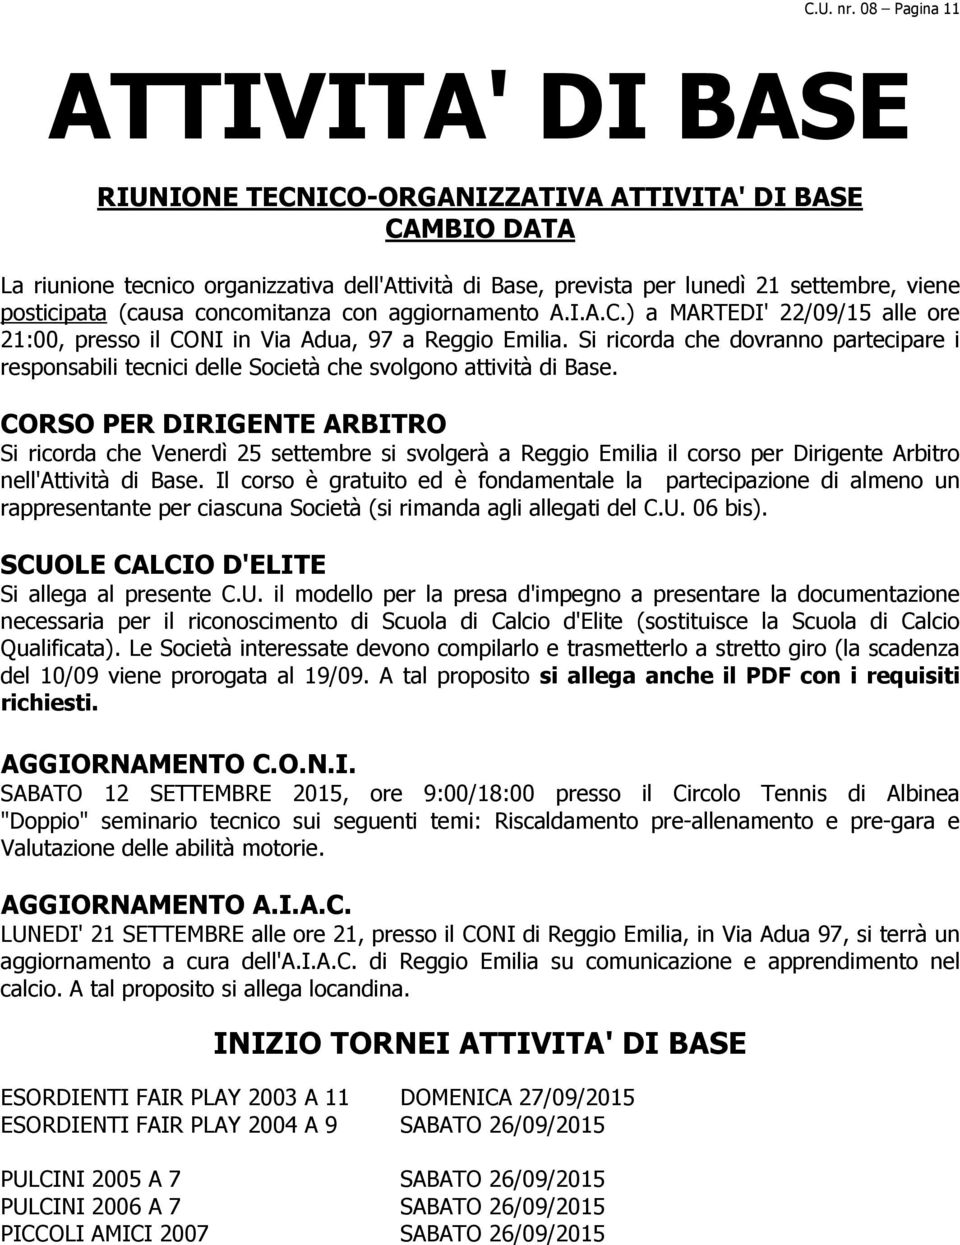 posticipata (causa concomitanza con aggiornamento A.I.A.C.) a MARTEDI' 22/09/15 alle ore 21:00, presso il CONI in Via Adua, 97 a Reggio Emilia.